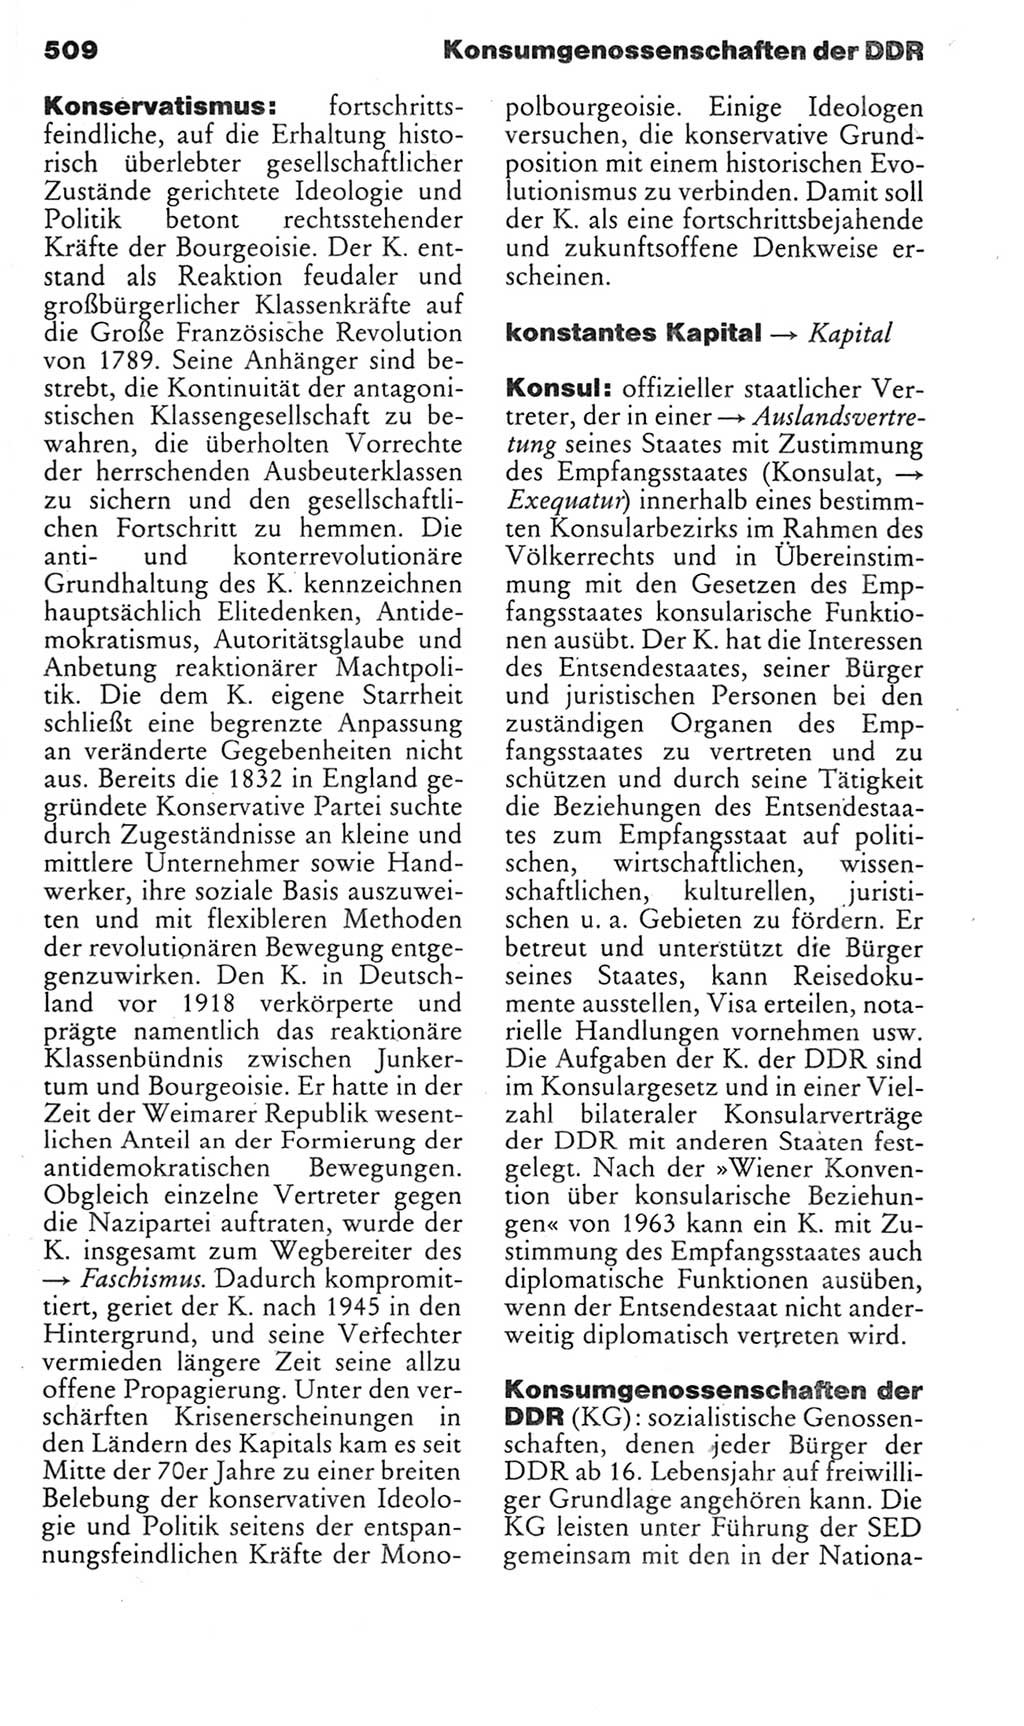 Kleines politisches Wörterbuch [Deutsche Demokratische Republik (DDR)] 1985, Seite 509 (Kl. pol. Wb. DDR 1985, S. 509)